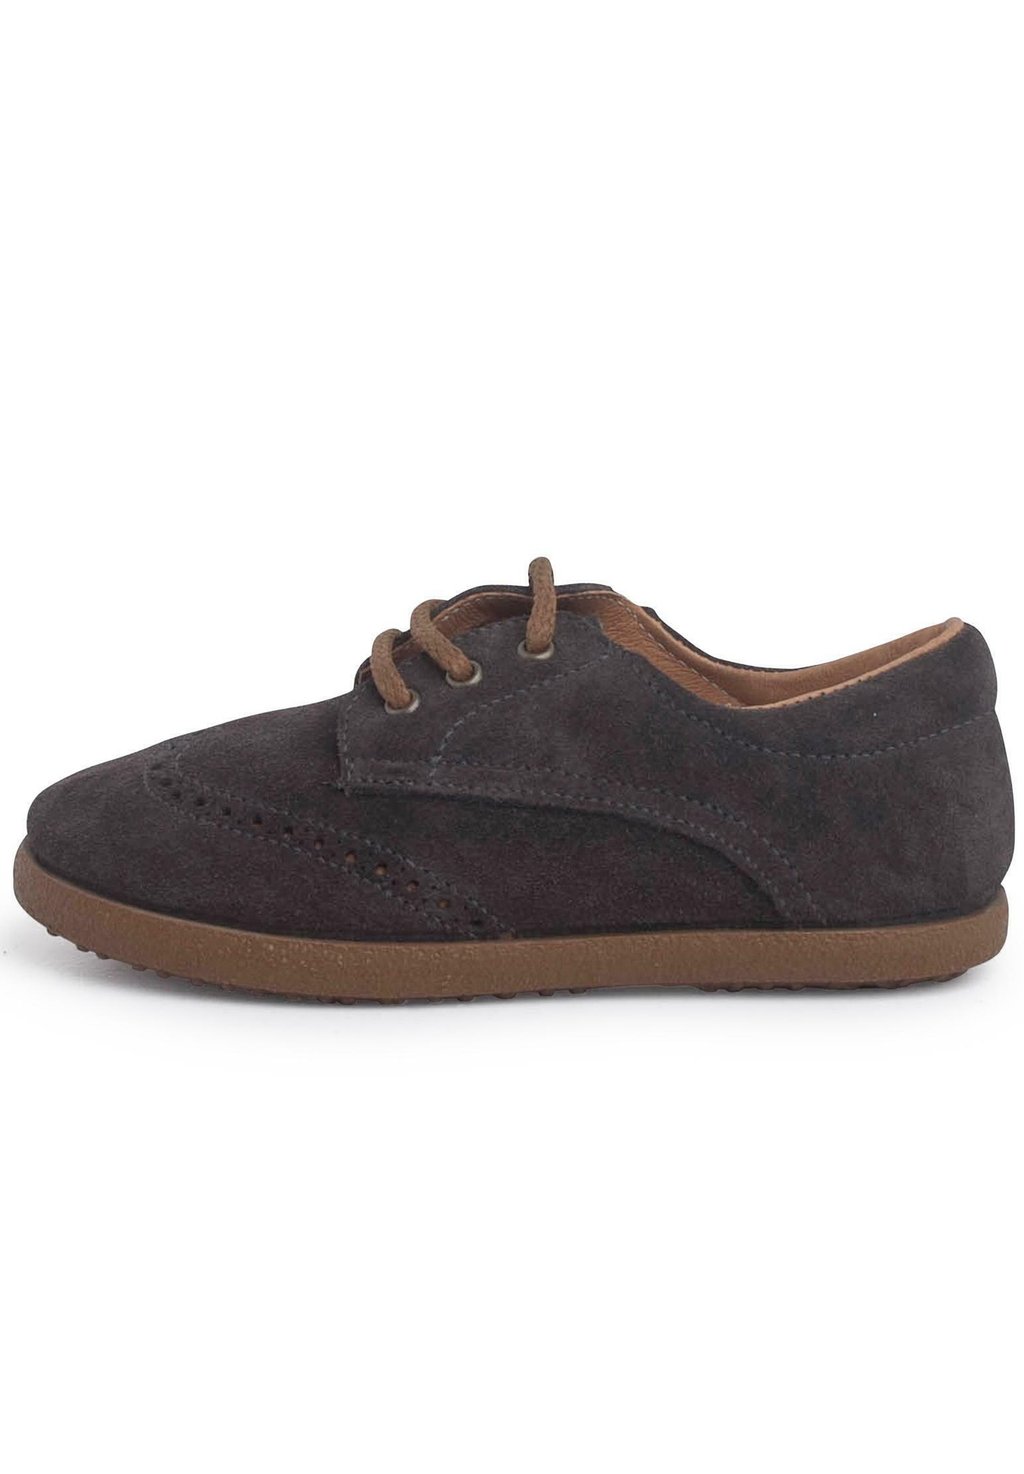 Обувь для обучения OXFORD Pisamonas, цвет gris oscuro обувь для обучения oxford pisamonas цвет gris oscuro